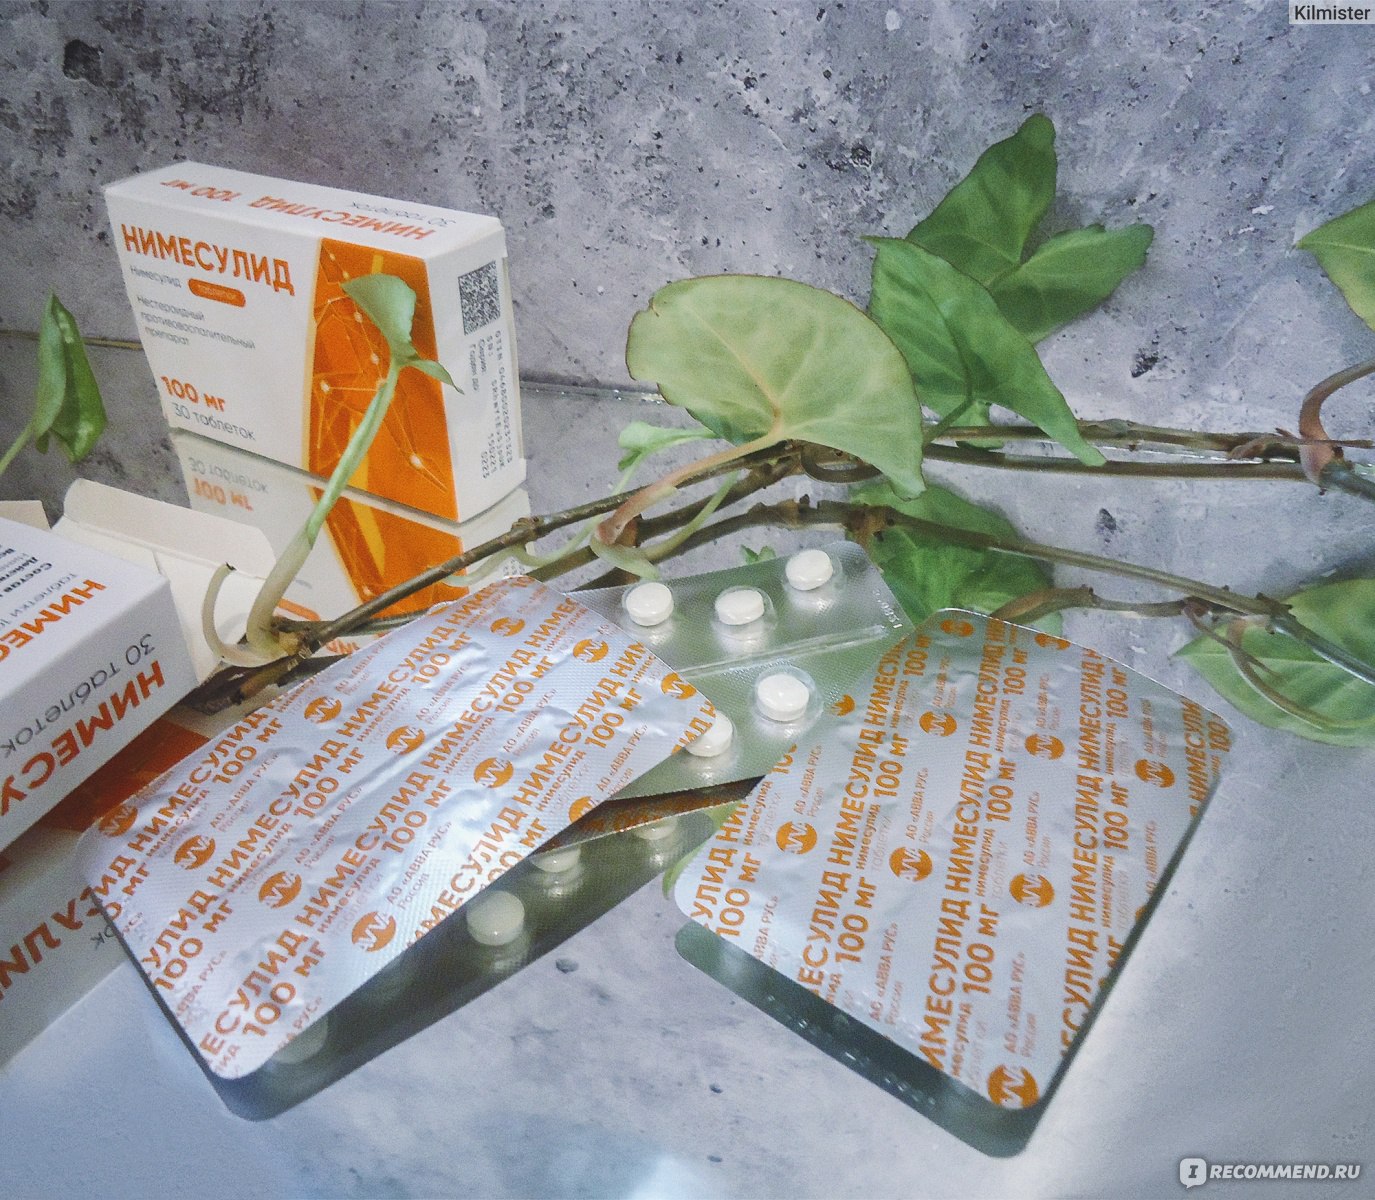 Влияние лекарственных препаратов на половую функцию человека — Википедия